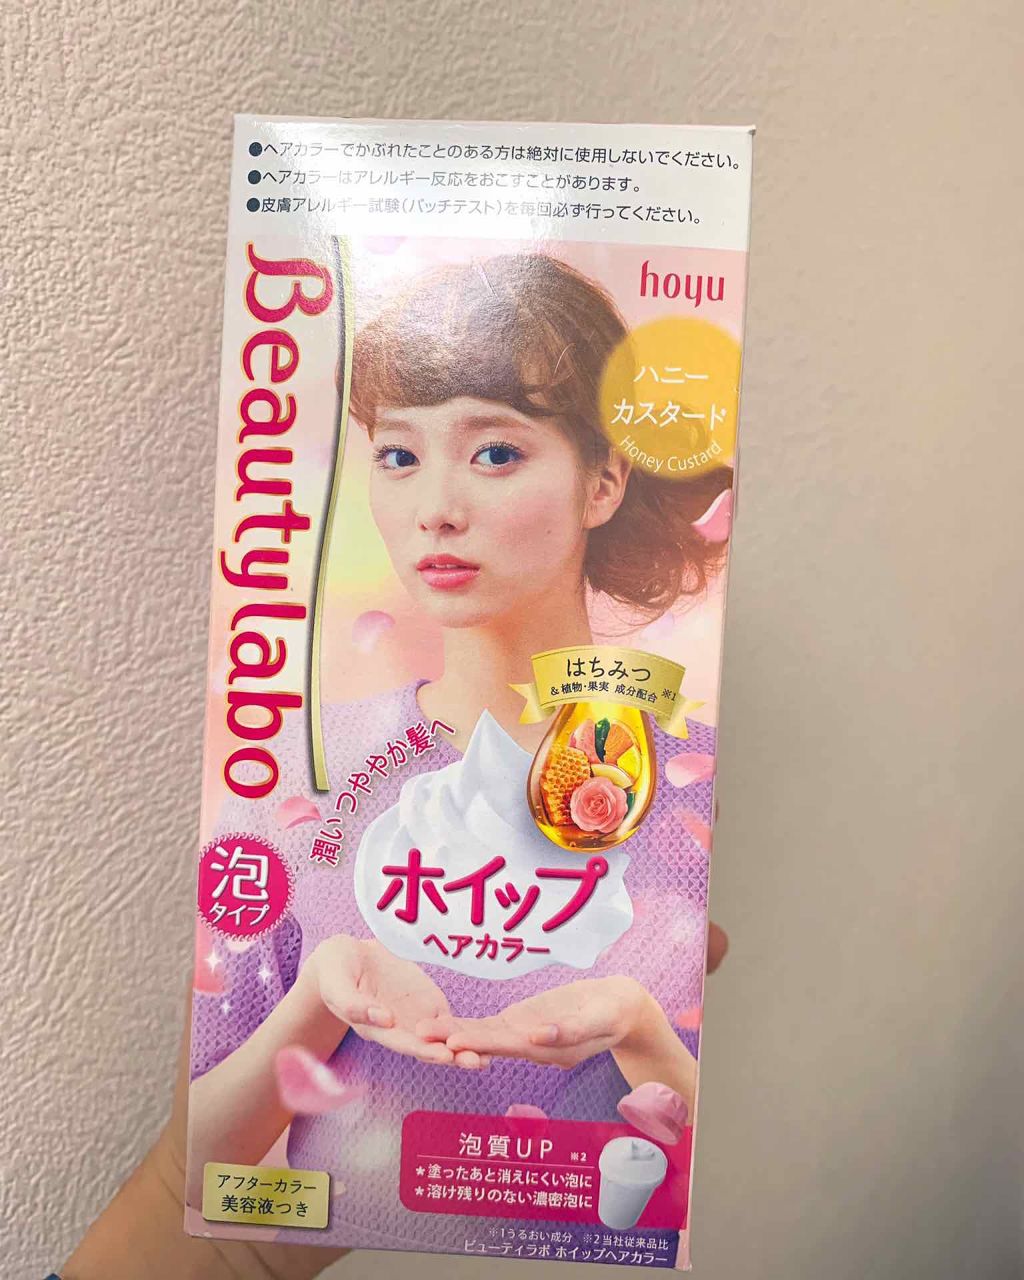 ホイップヘアカラー ビューティラボの口コミ 本日市販のカラー剤で染めました オレンジ系 By Chihiro 20代前半 Lips